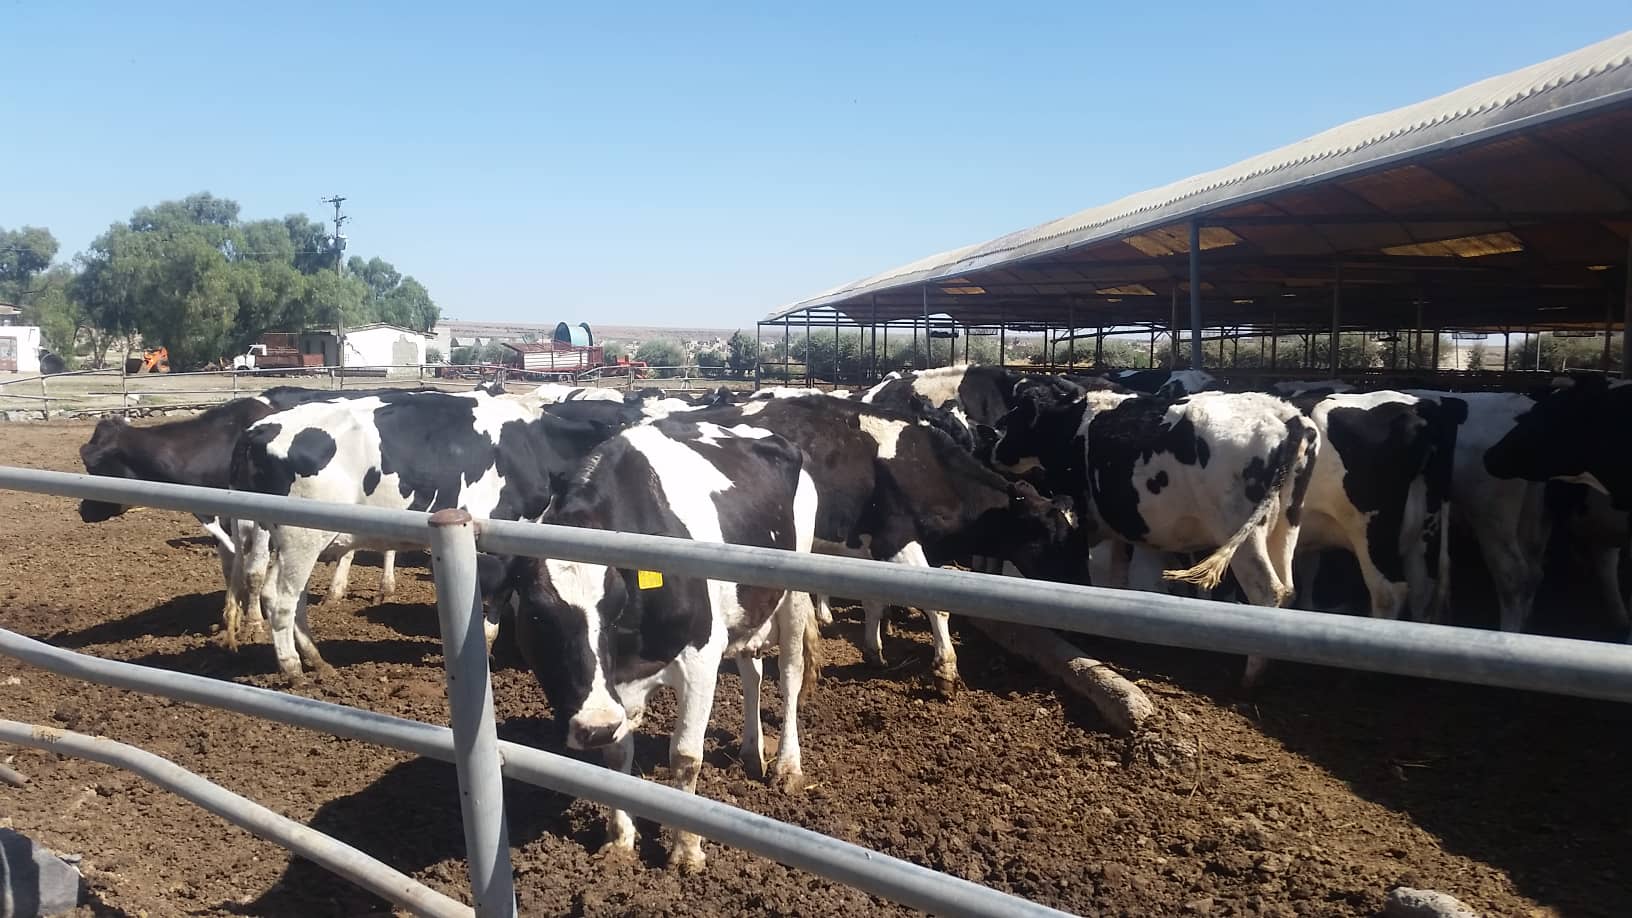 dhamar rosabah farm cows 3 Nov 2018 for OWAP AR Hisham pic.jpg